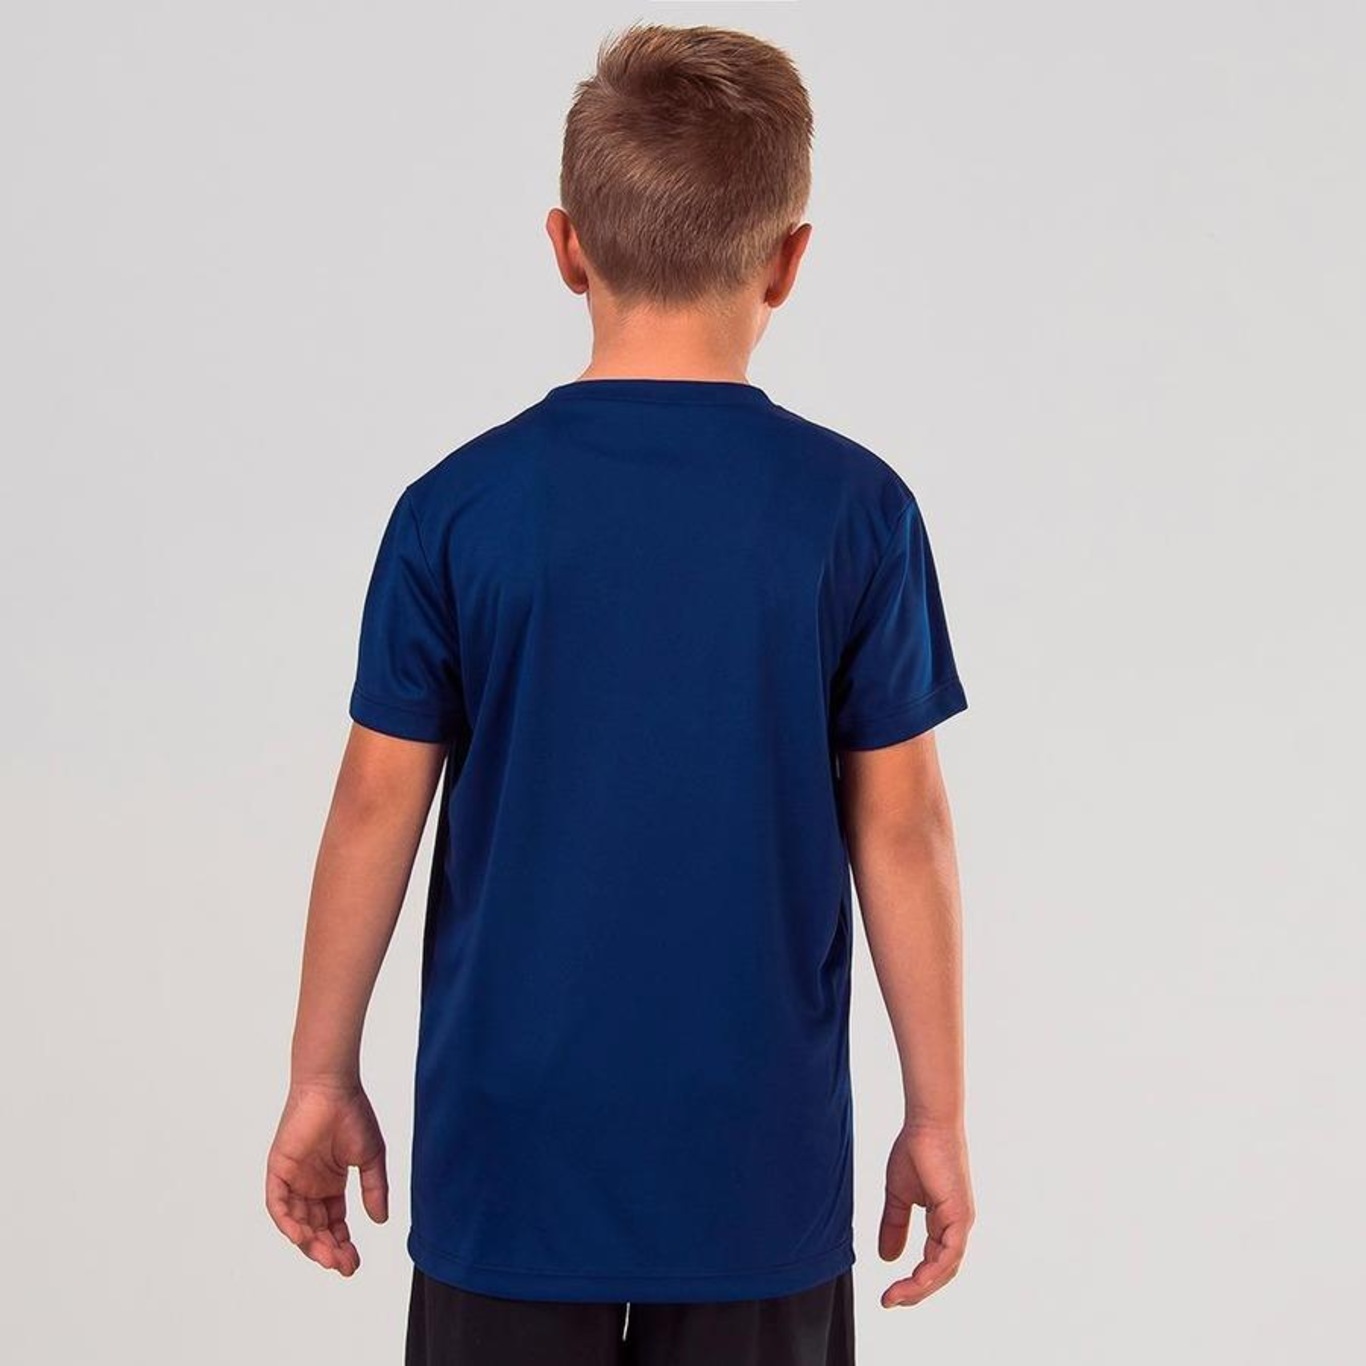 Camiseta Umbro Twr Striker - Infantil - Foto 3